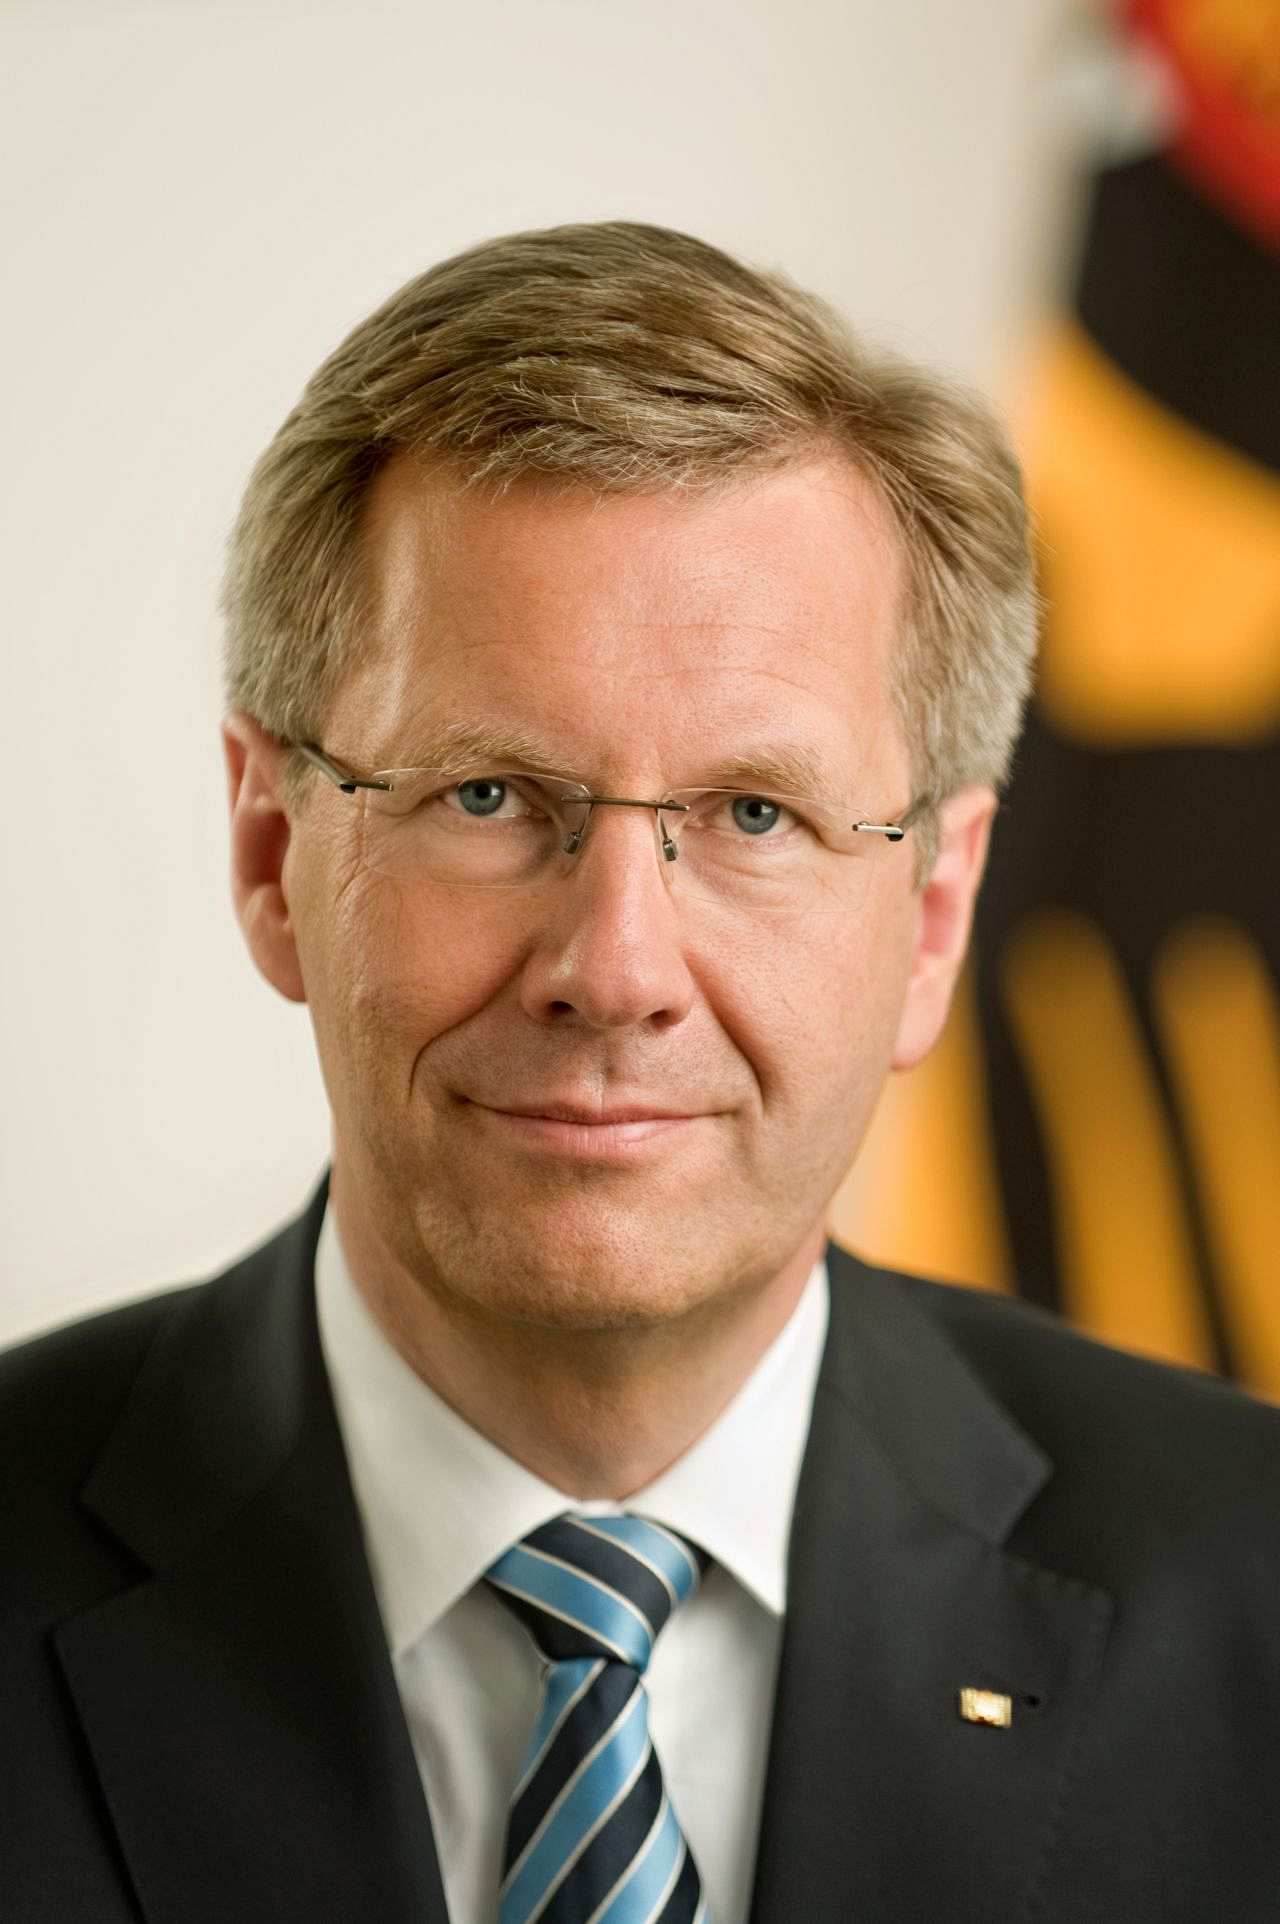 Offizielles Porträt von Christian Wulff, Bundespräsident der Bundesrepublik Deutschland (2010-2012).